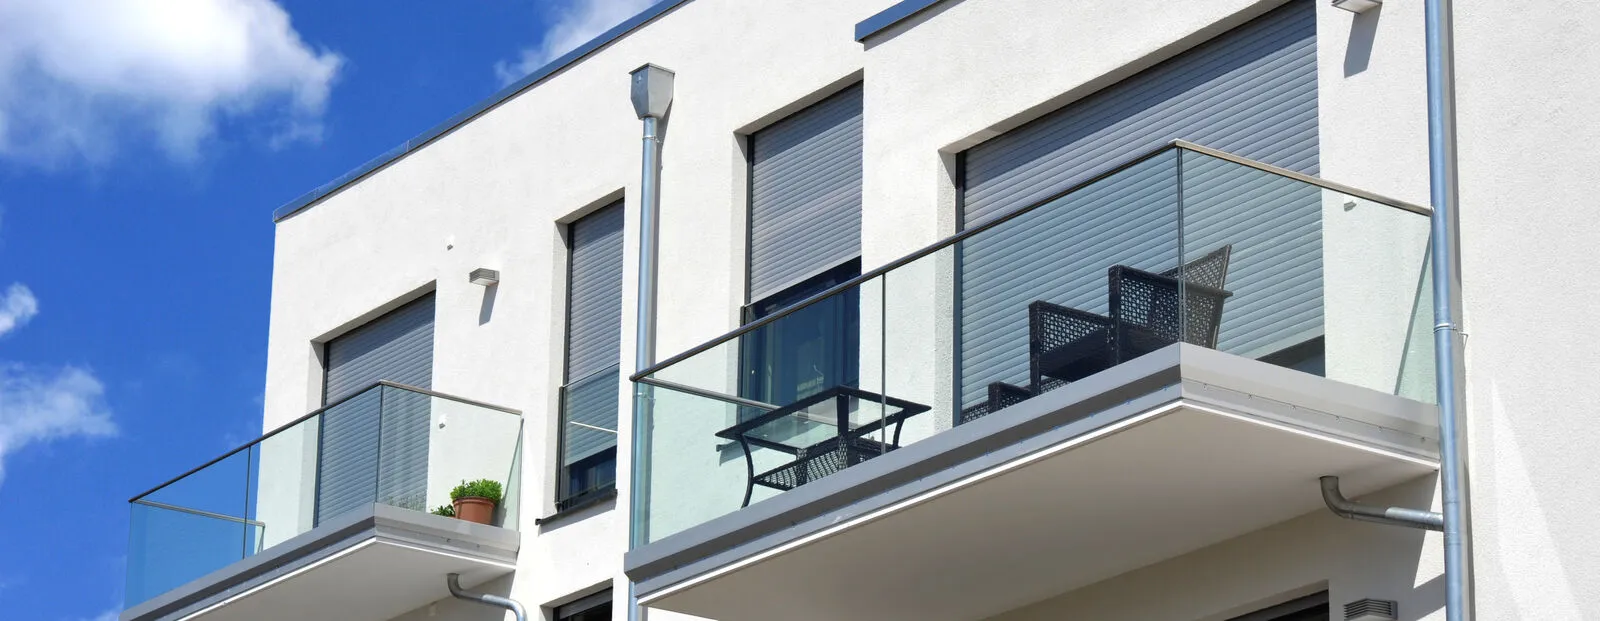 Moderne Balkone, verglast mit Metall-GelÃ¤nder an Neubau-Hausfront mit Flachdach, WasserkÃ¤sten, Regenfallrohren und Edelstahl-Attika.jpg